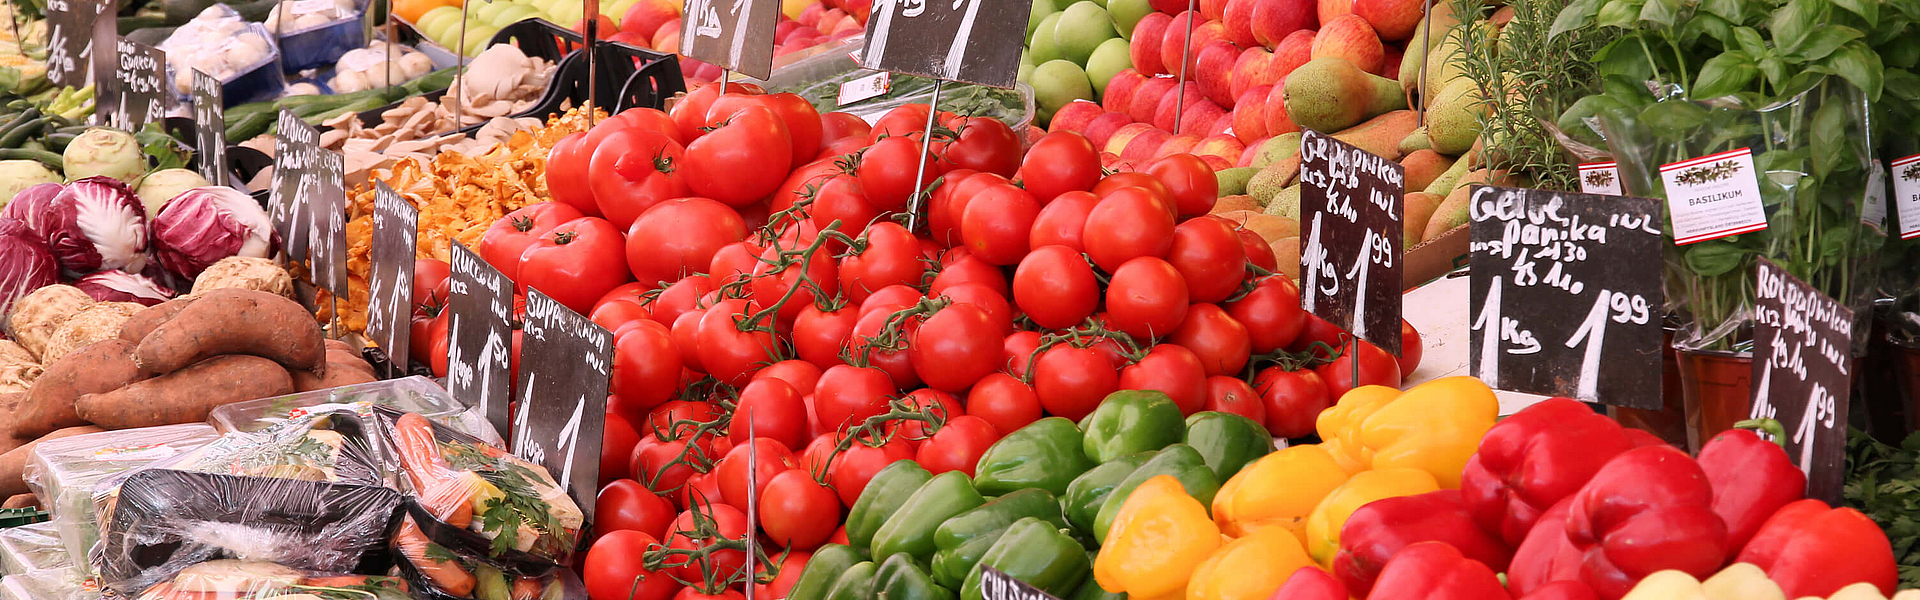 Obst und Gemüse liefern Vitamine